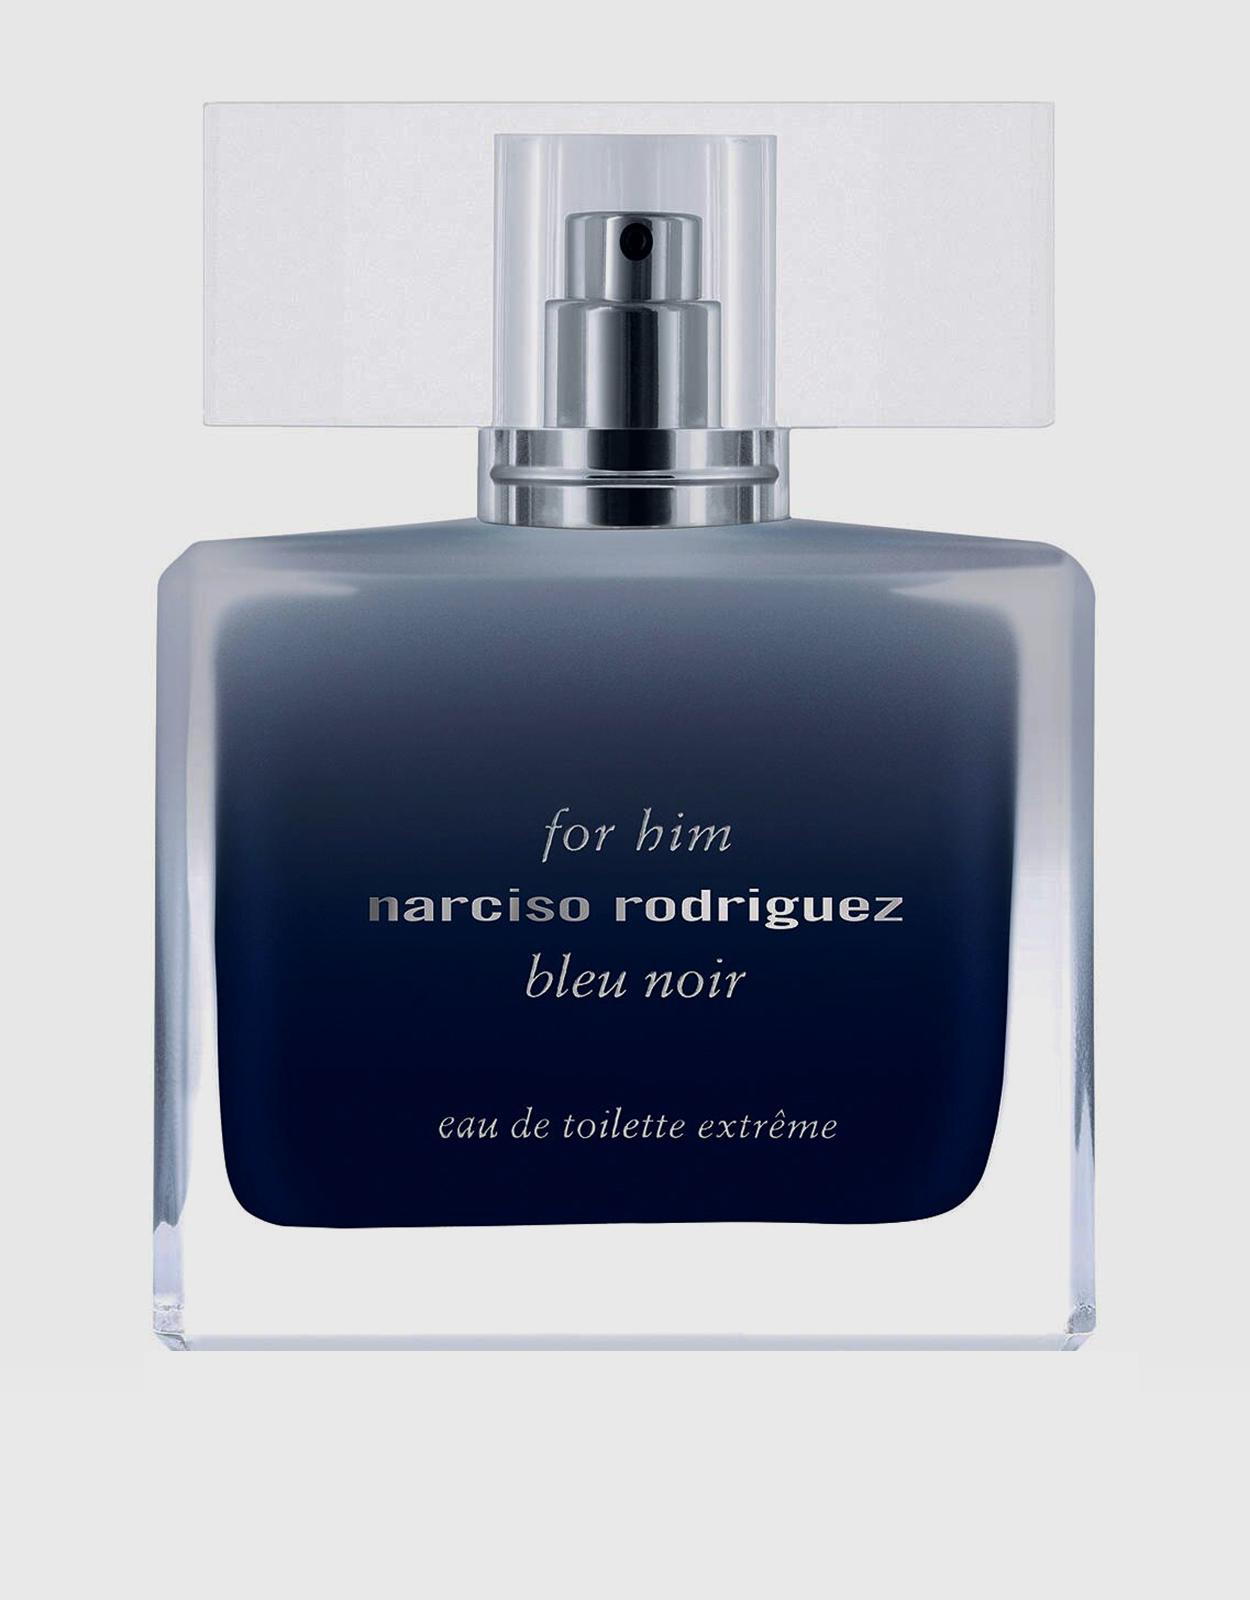 Narciso Rodriguez for Him Bleu Noir Parfum – The Fragrance Decant Boutique®